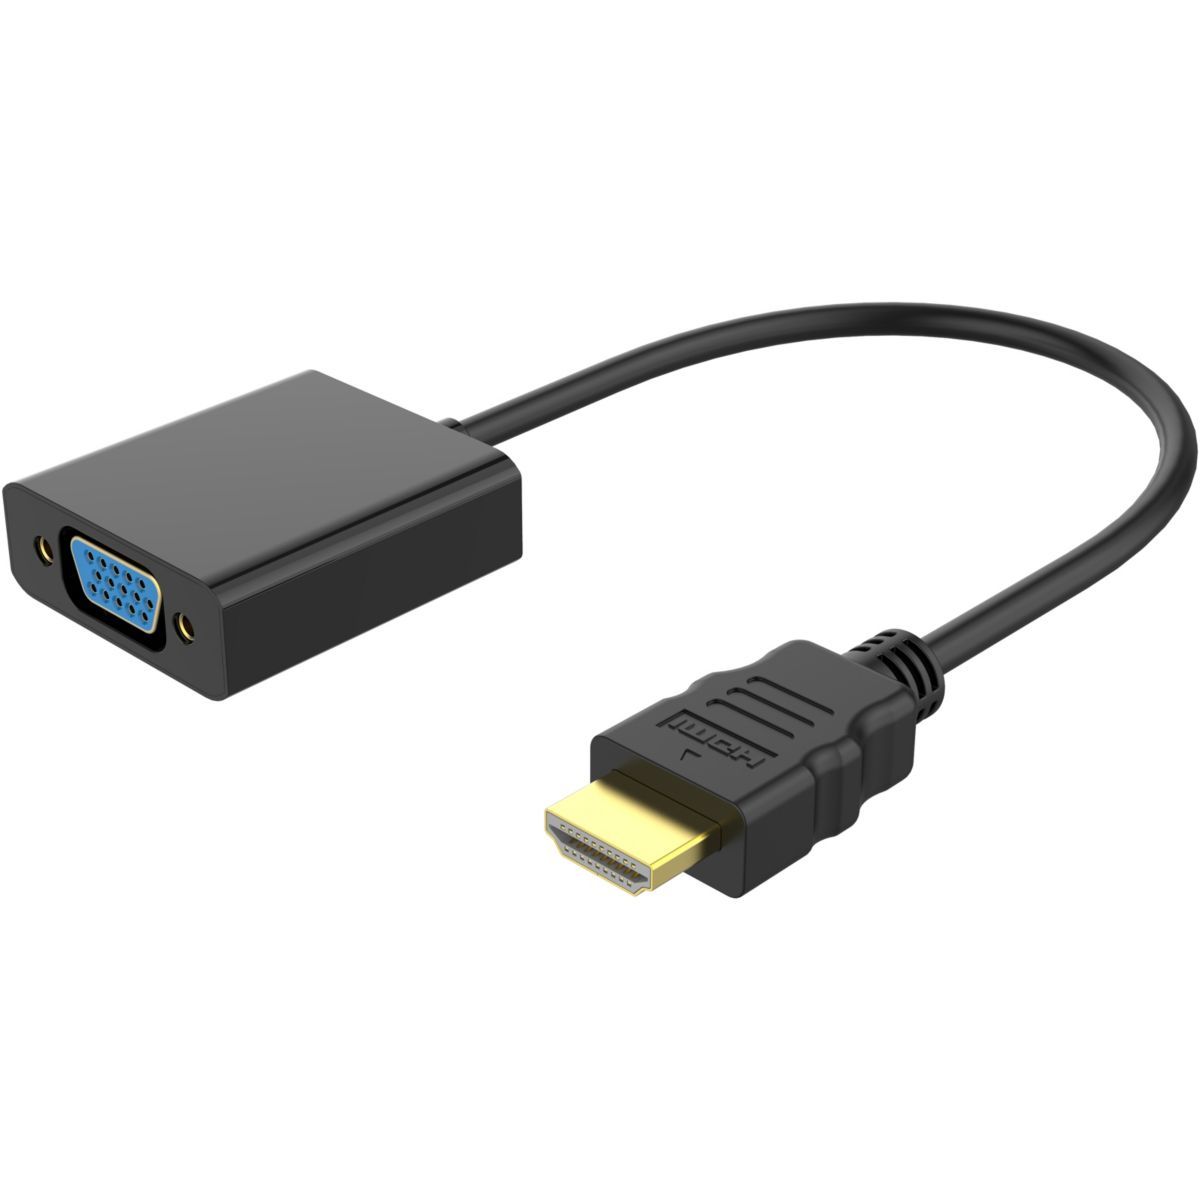 Chargeur pour Tablette Essentielb Smart tab secteur + cable pour